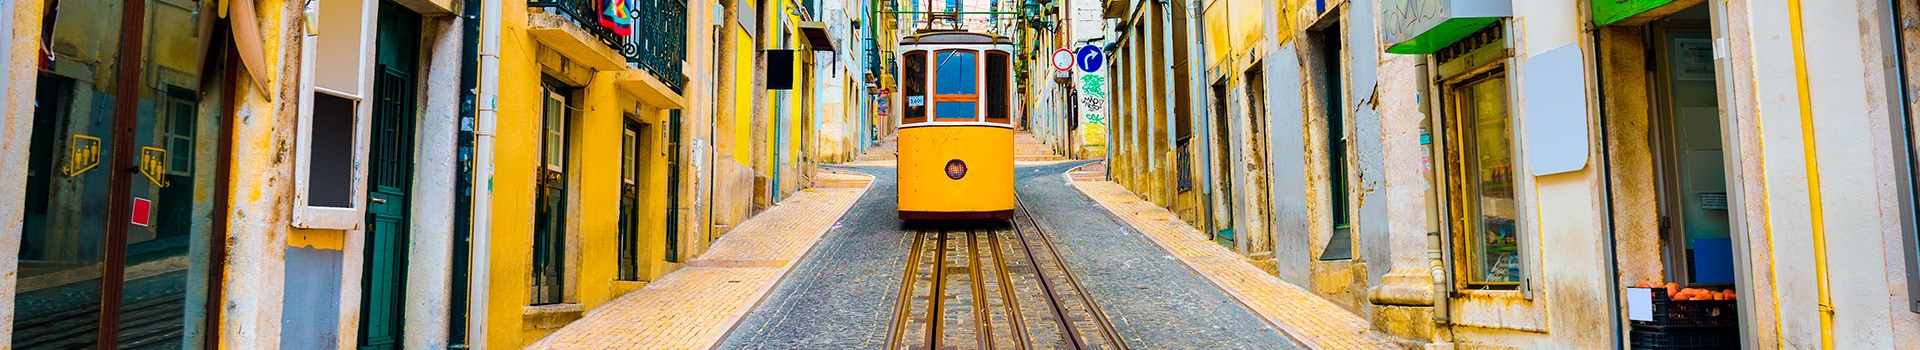 Madeira - Lisbon